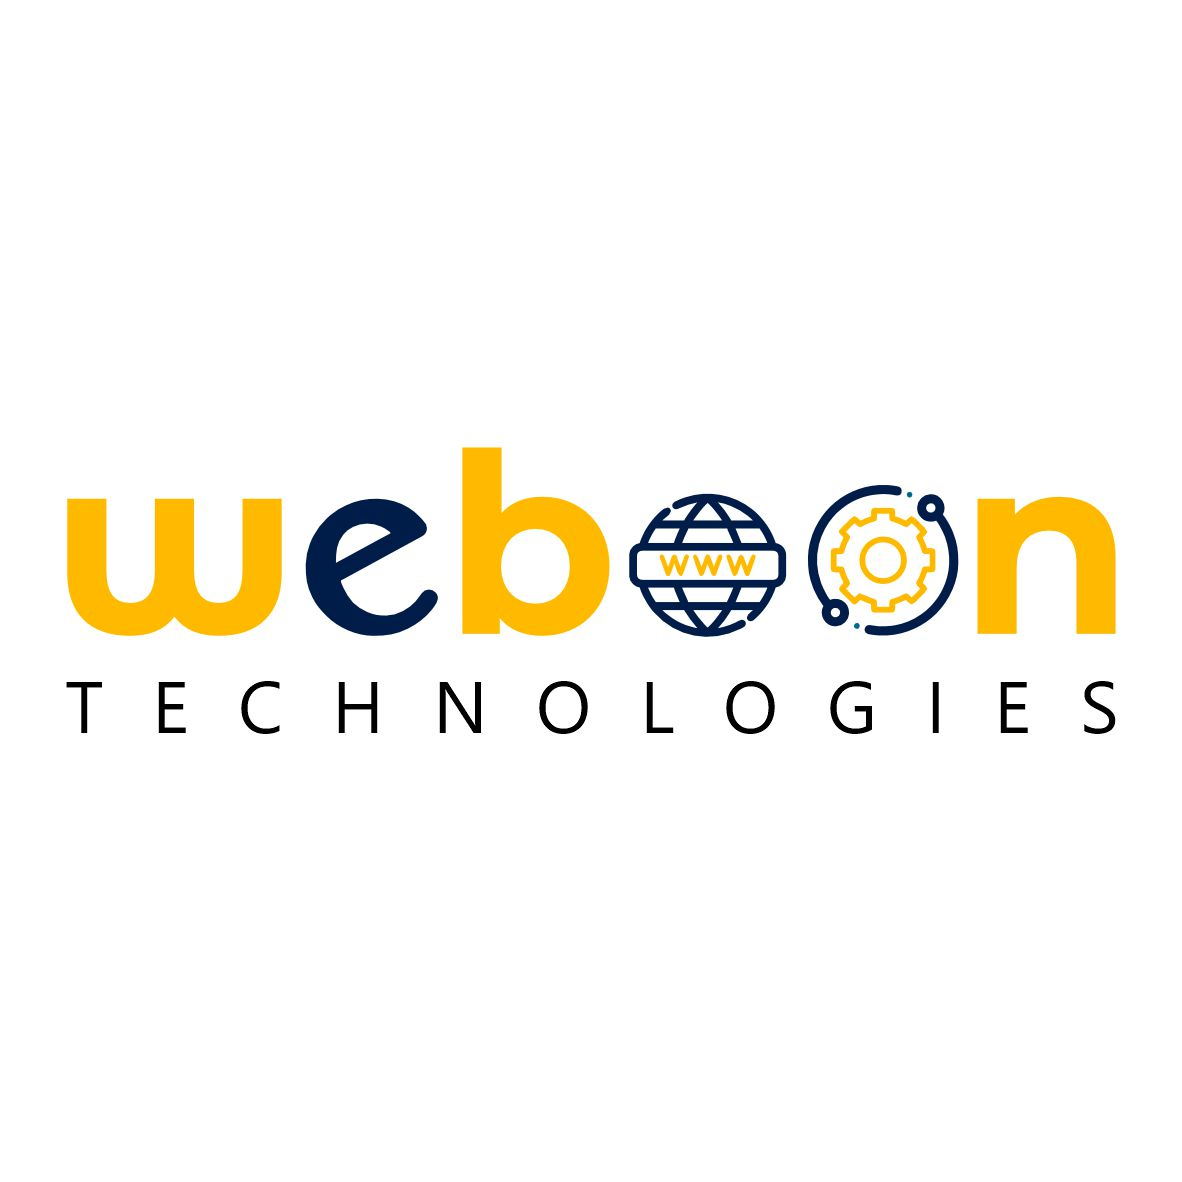 weboontechnologies